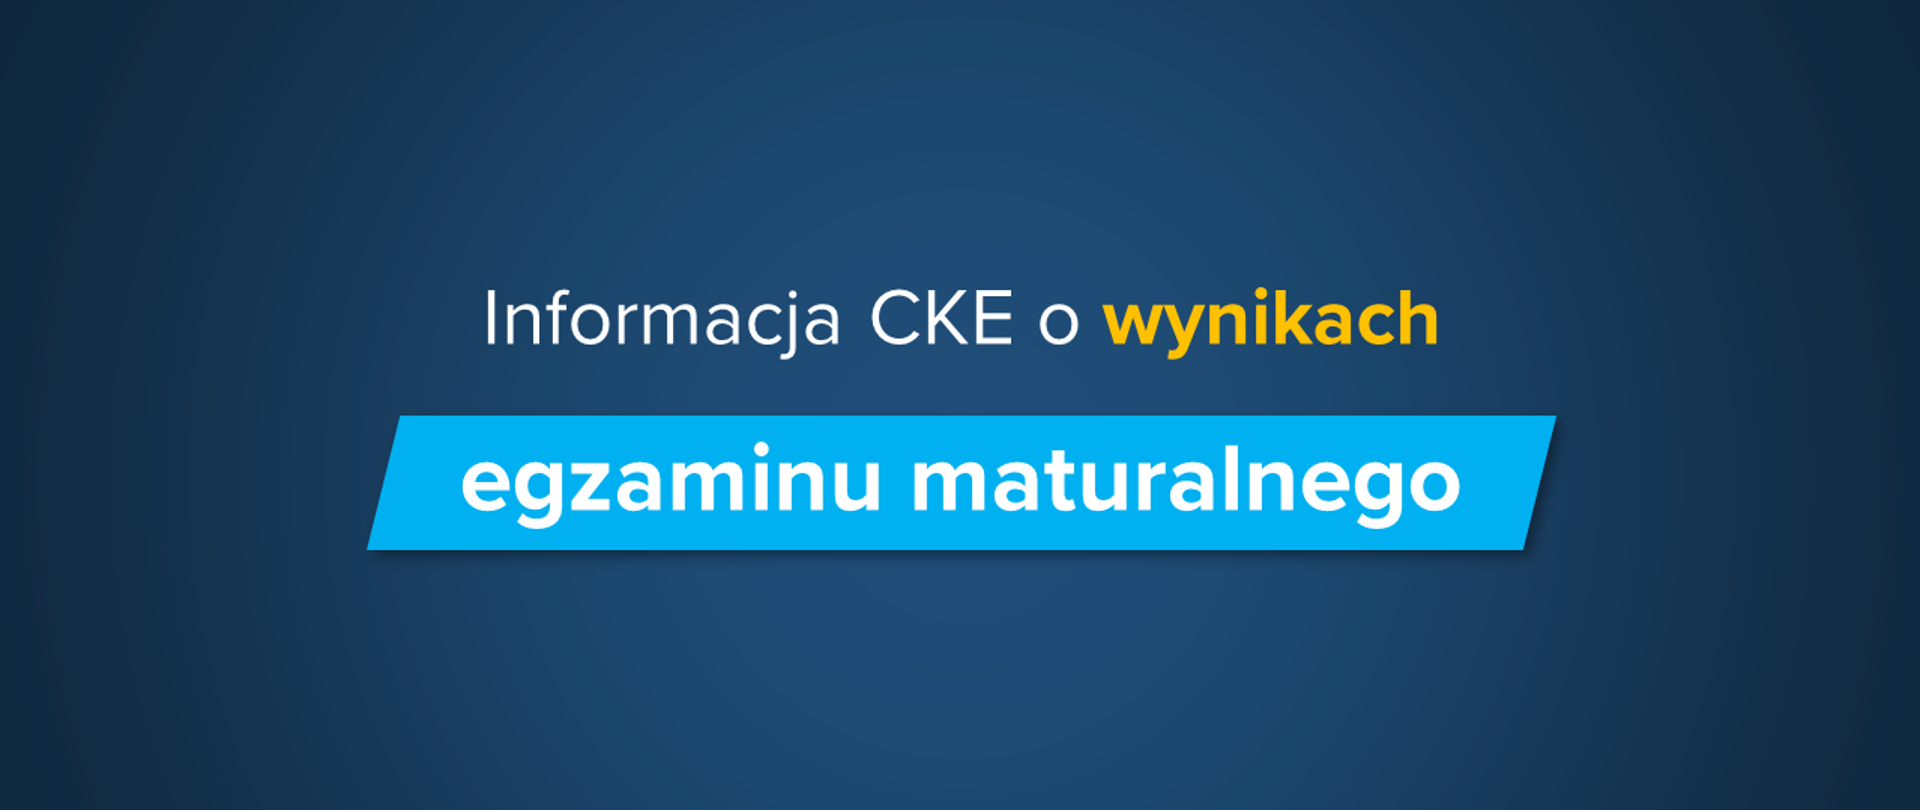 Ciemnoniebieskie tło z tekstem na środku "Informacja CKE o wynikach egzaminu maturalnego"